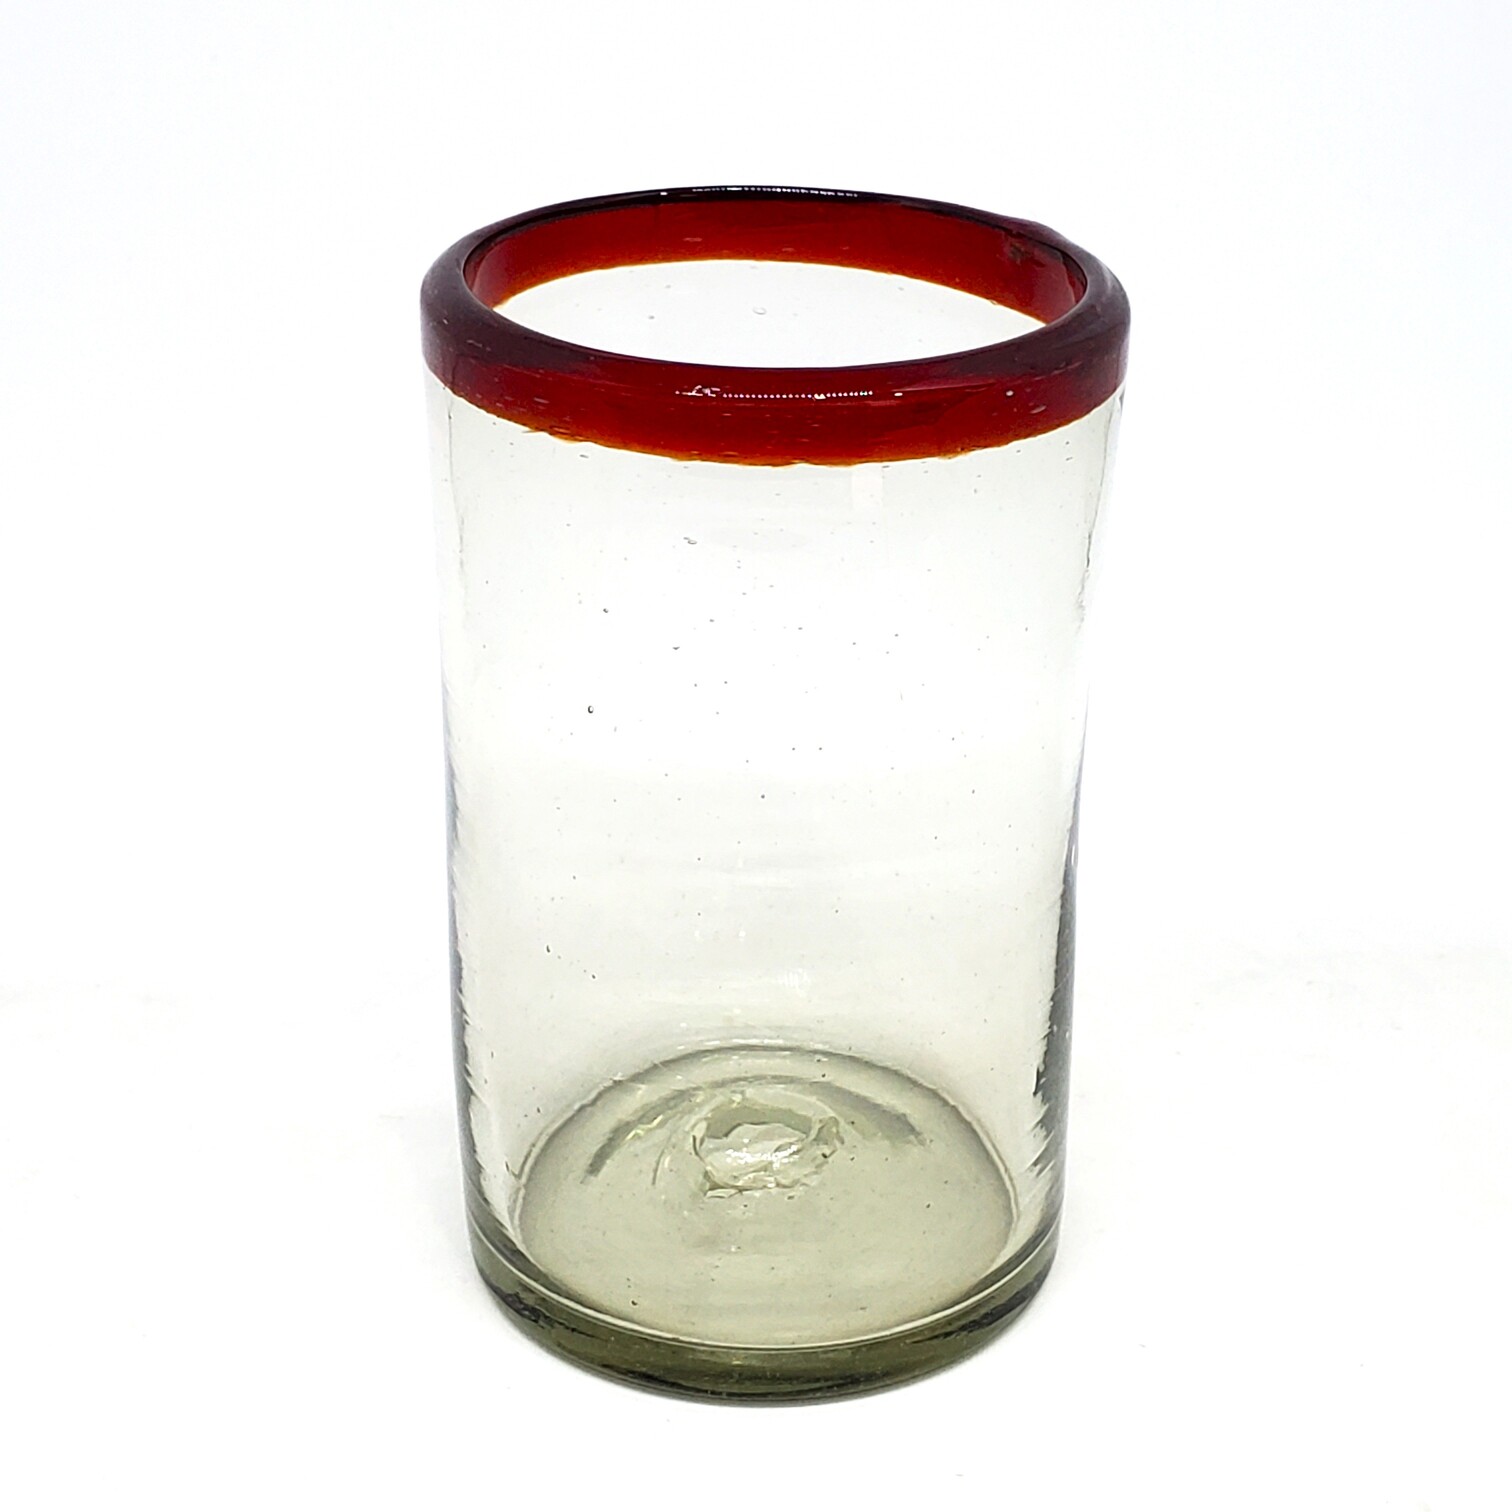 Vasos de Vidrio Soplado / Juego de 6 vasos grandes con borde rojo rubí / Éstos artesanales vasos le darán un toque clásico a su bebida favorita.